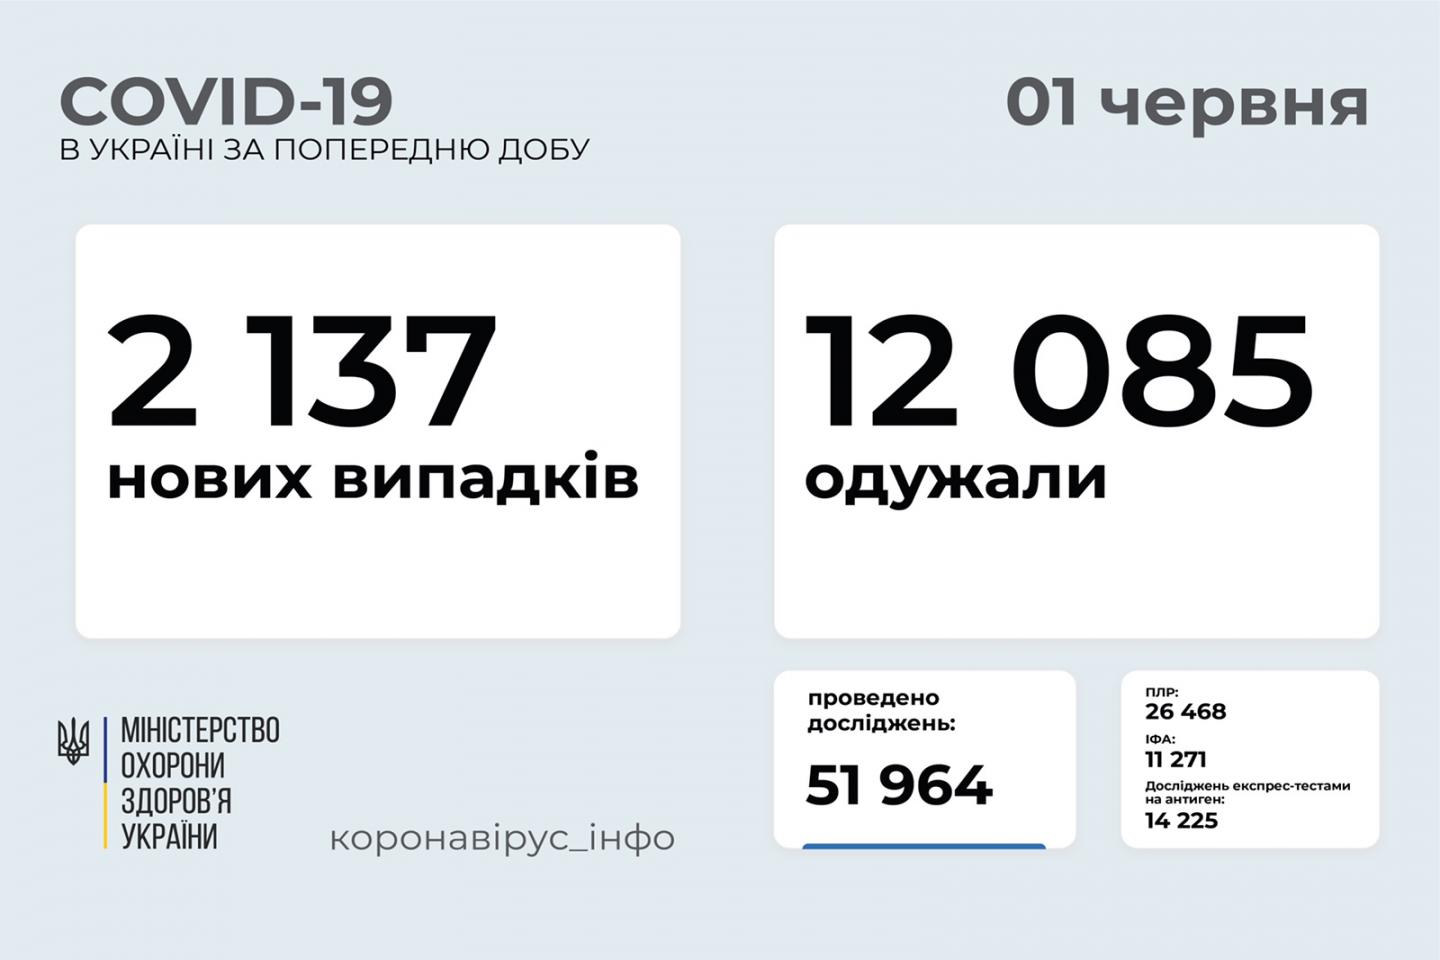 http://dunrada.gov.ua/uploadfile/archive_news/2021/06/01/2021-06-01_9344/images/images-89917.jpg